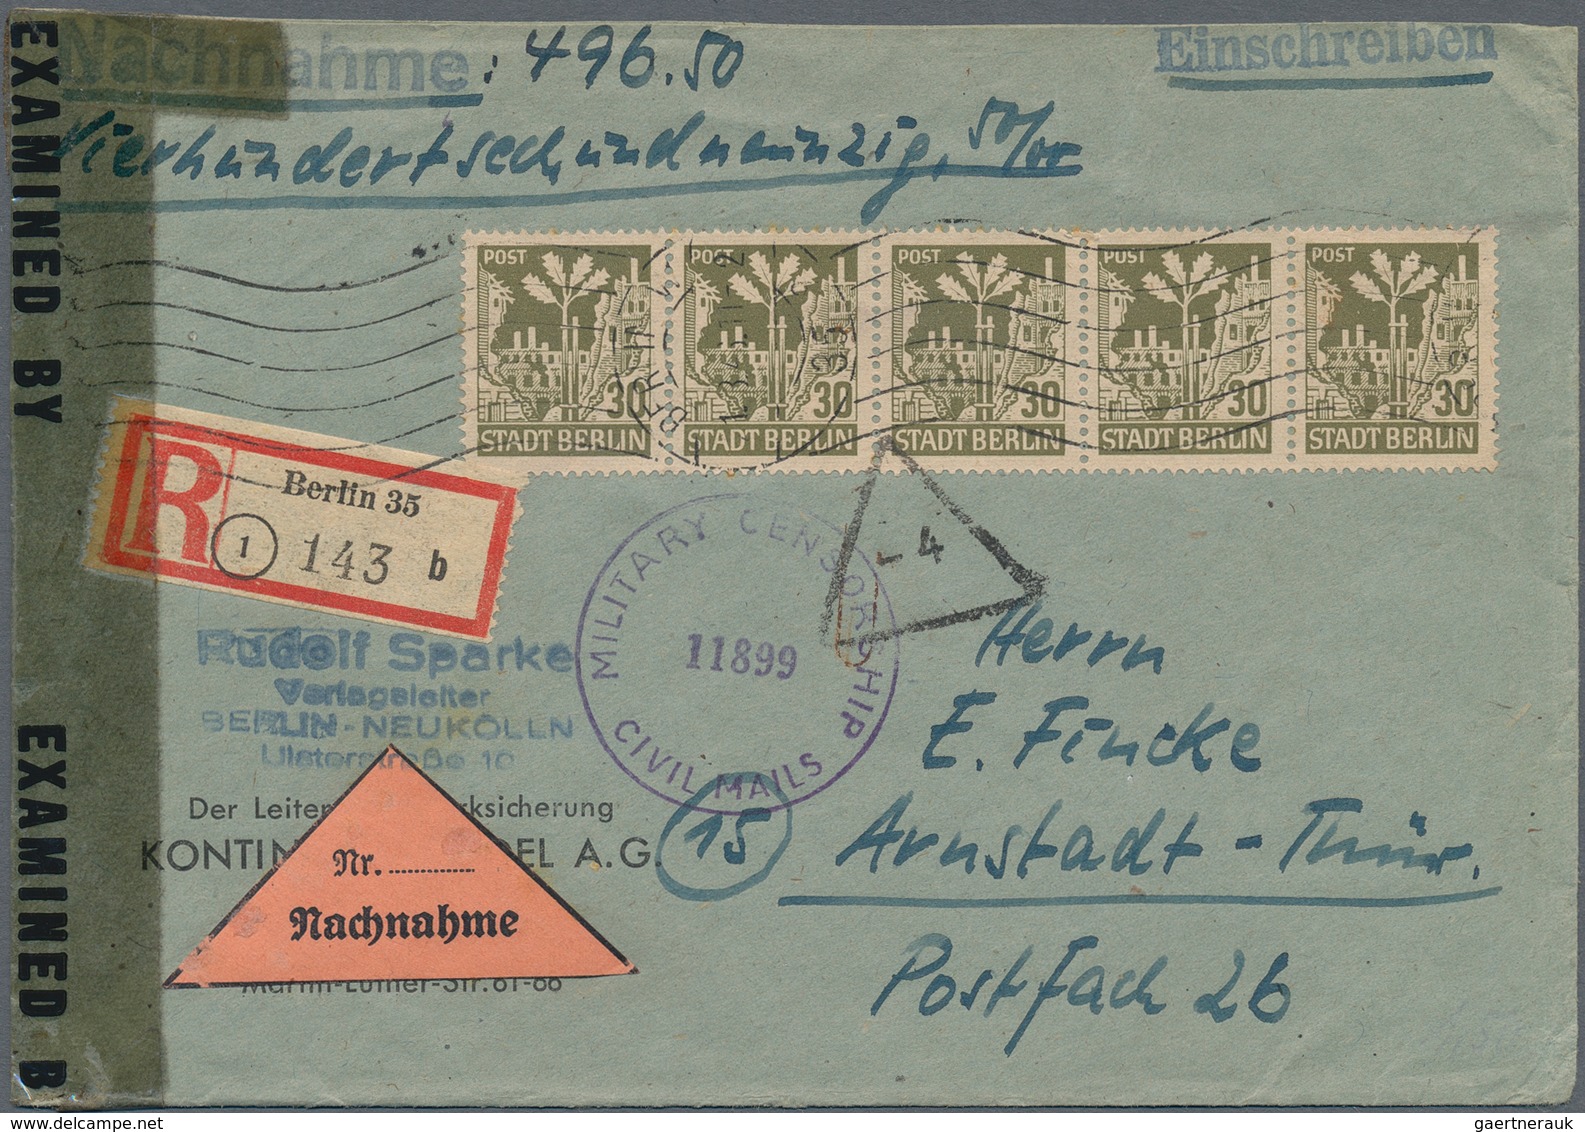 Sowjetische Zone - Berlin und Brandenburg: 1945/1946, Sammlung von ca. 115 Briefen/Karten/gebrauchte